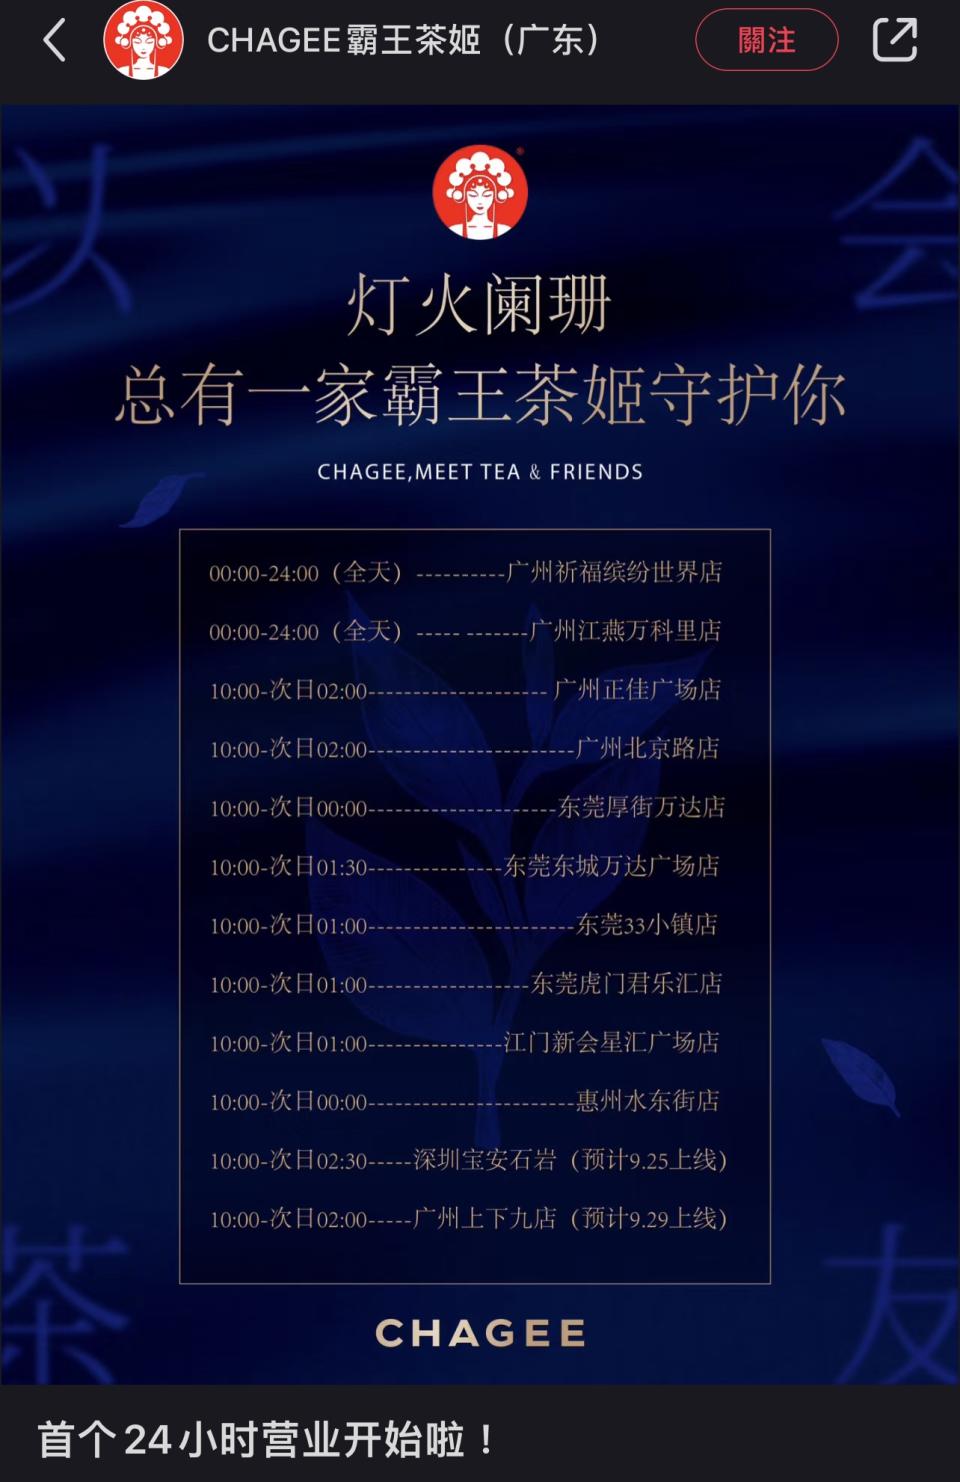 上月底「霸王茶姬」在小紅書宣布「首個24小時營業開始」